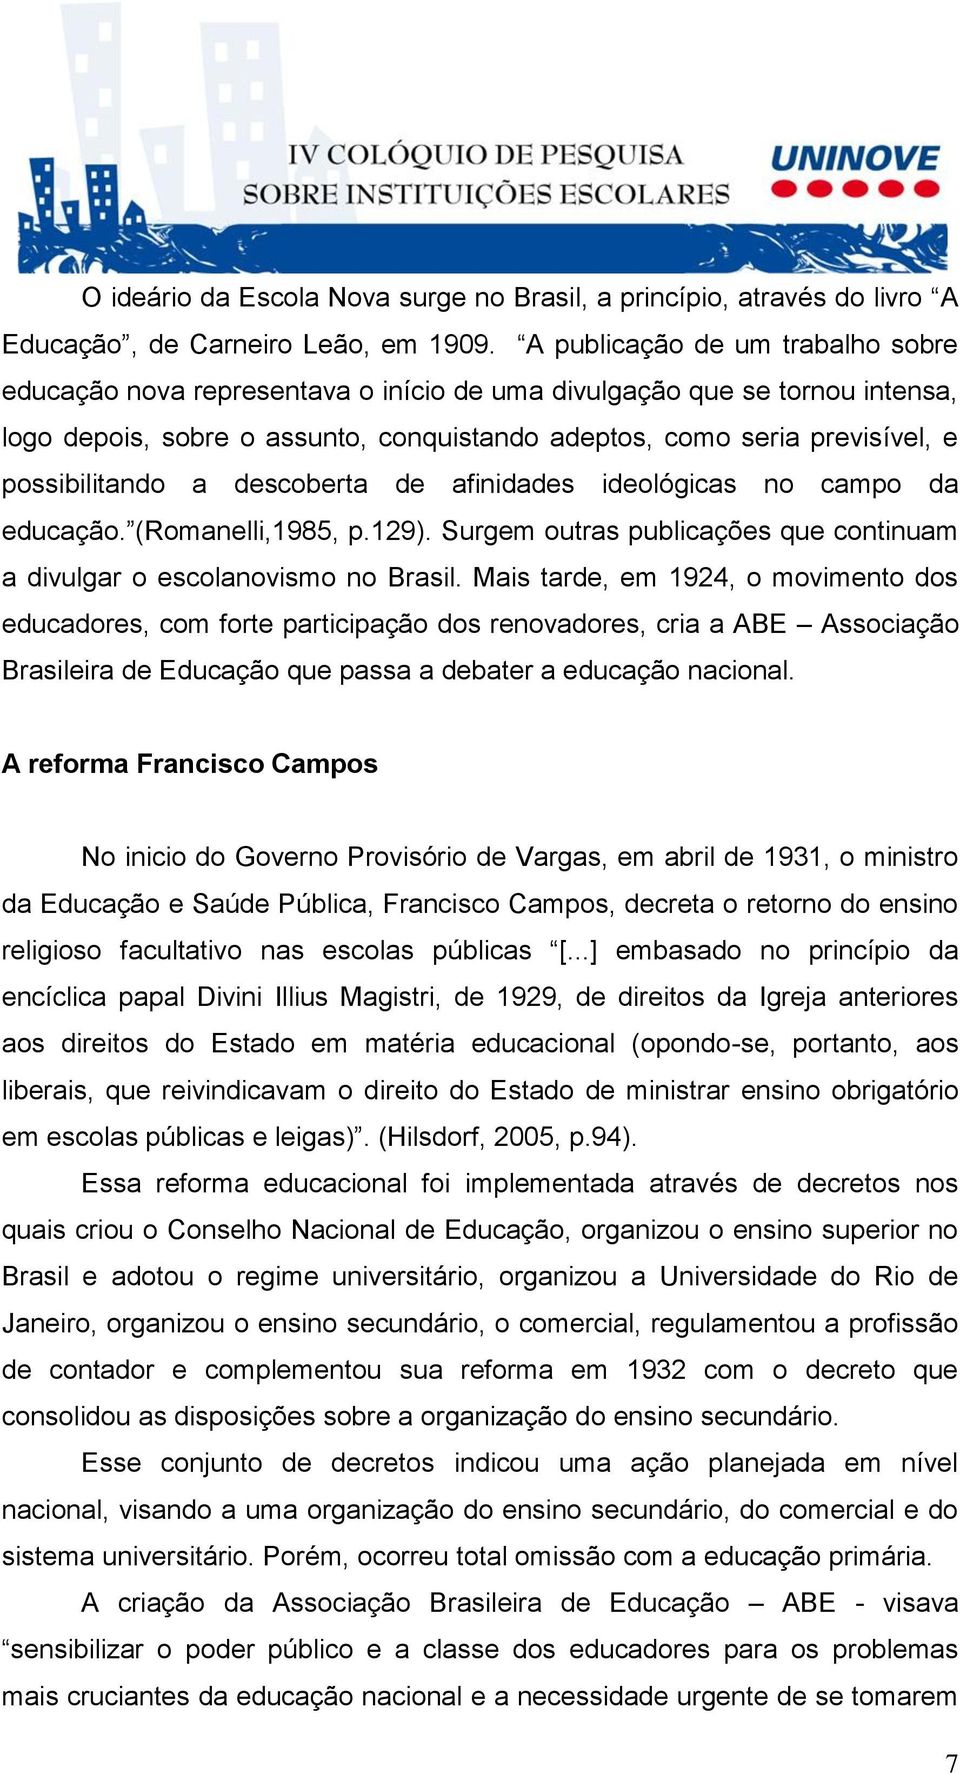 possibilitando a descoberta de afinidades ideológicas no campo da educação. (Romanelli,1985, p.129). Surgem outras publicações que continuam a divulgar o escolanovismo no Brasil.